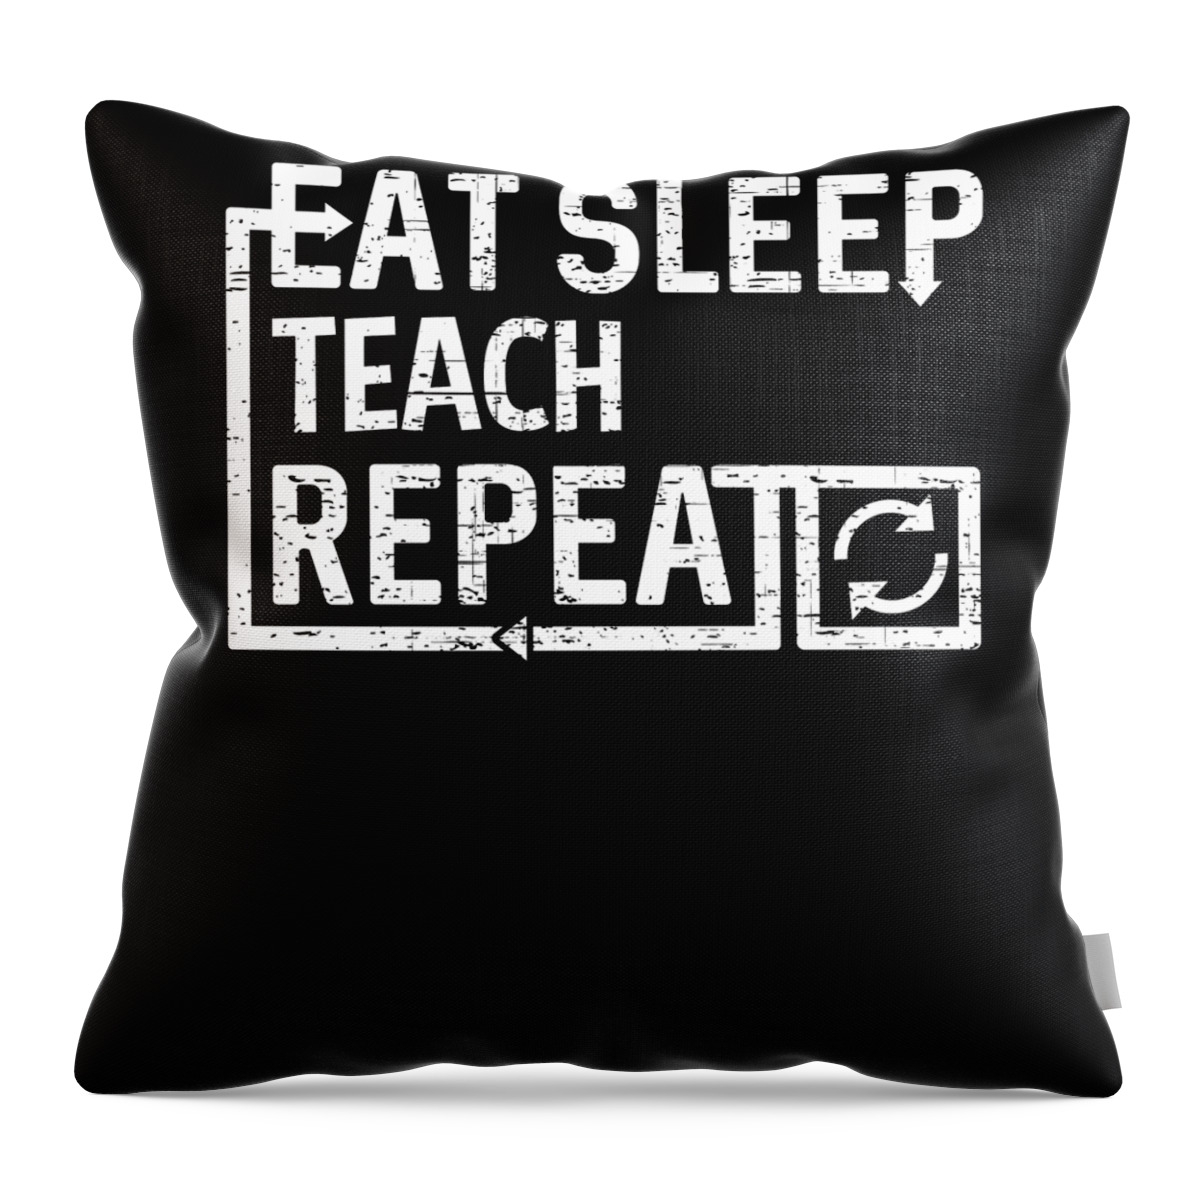 Cool Throw Pillow featuring the digital art Eat Sleep Teach by Flippin Sweet Gear